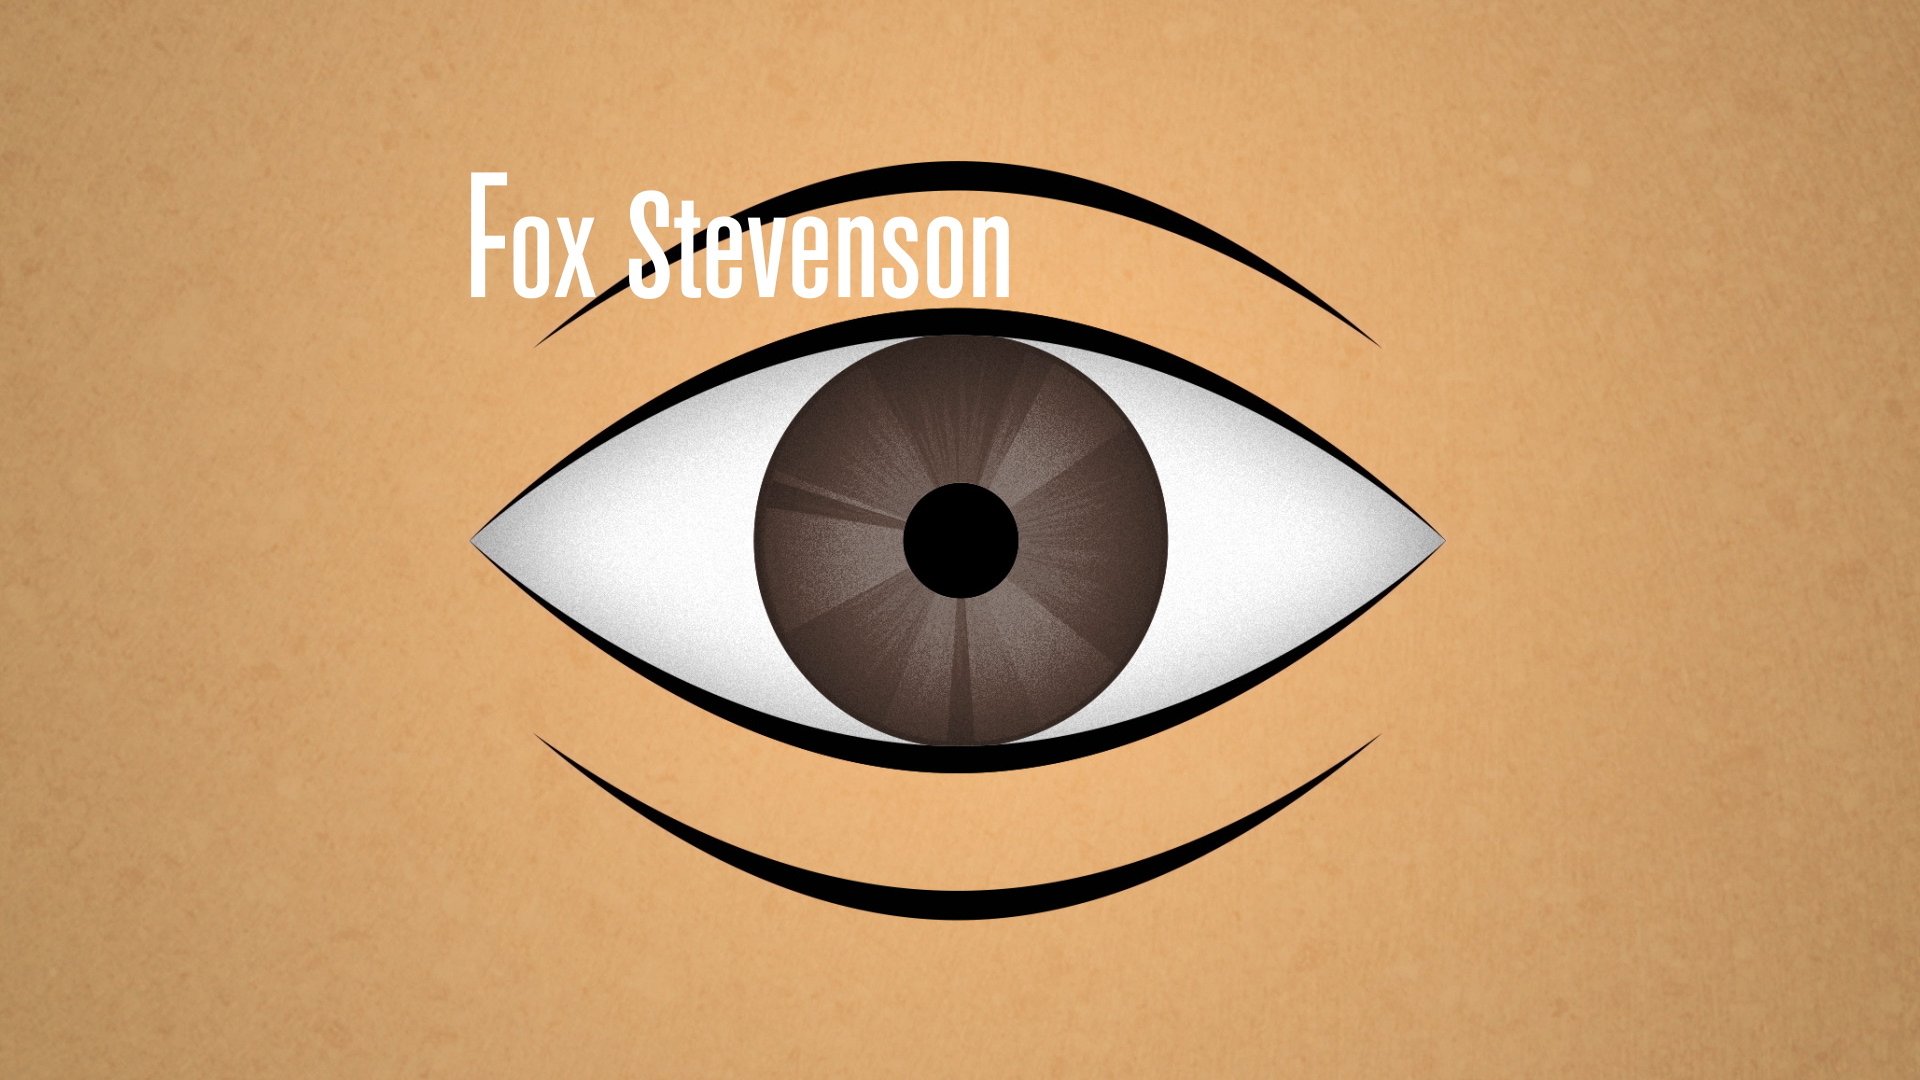 FoxStevenson_01.jpg